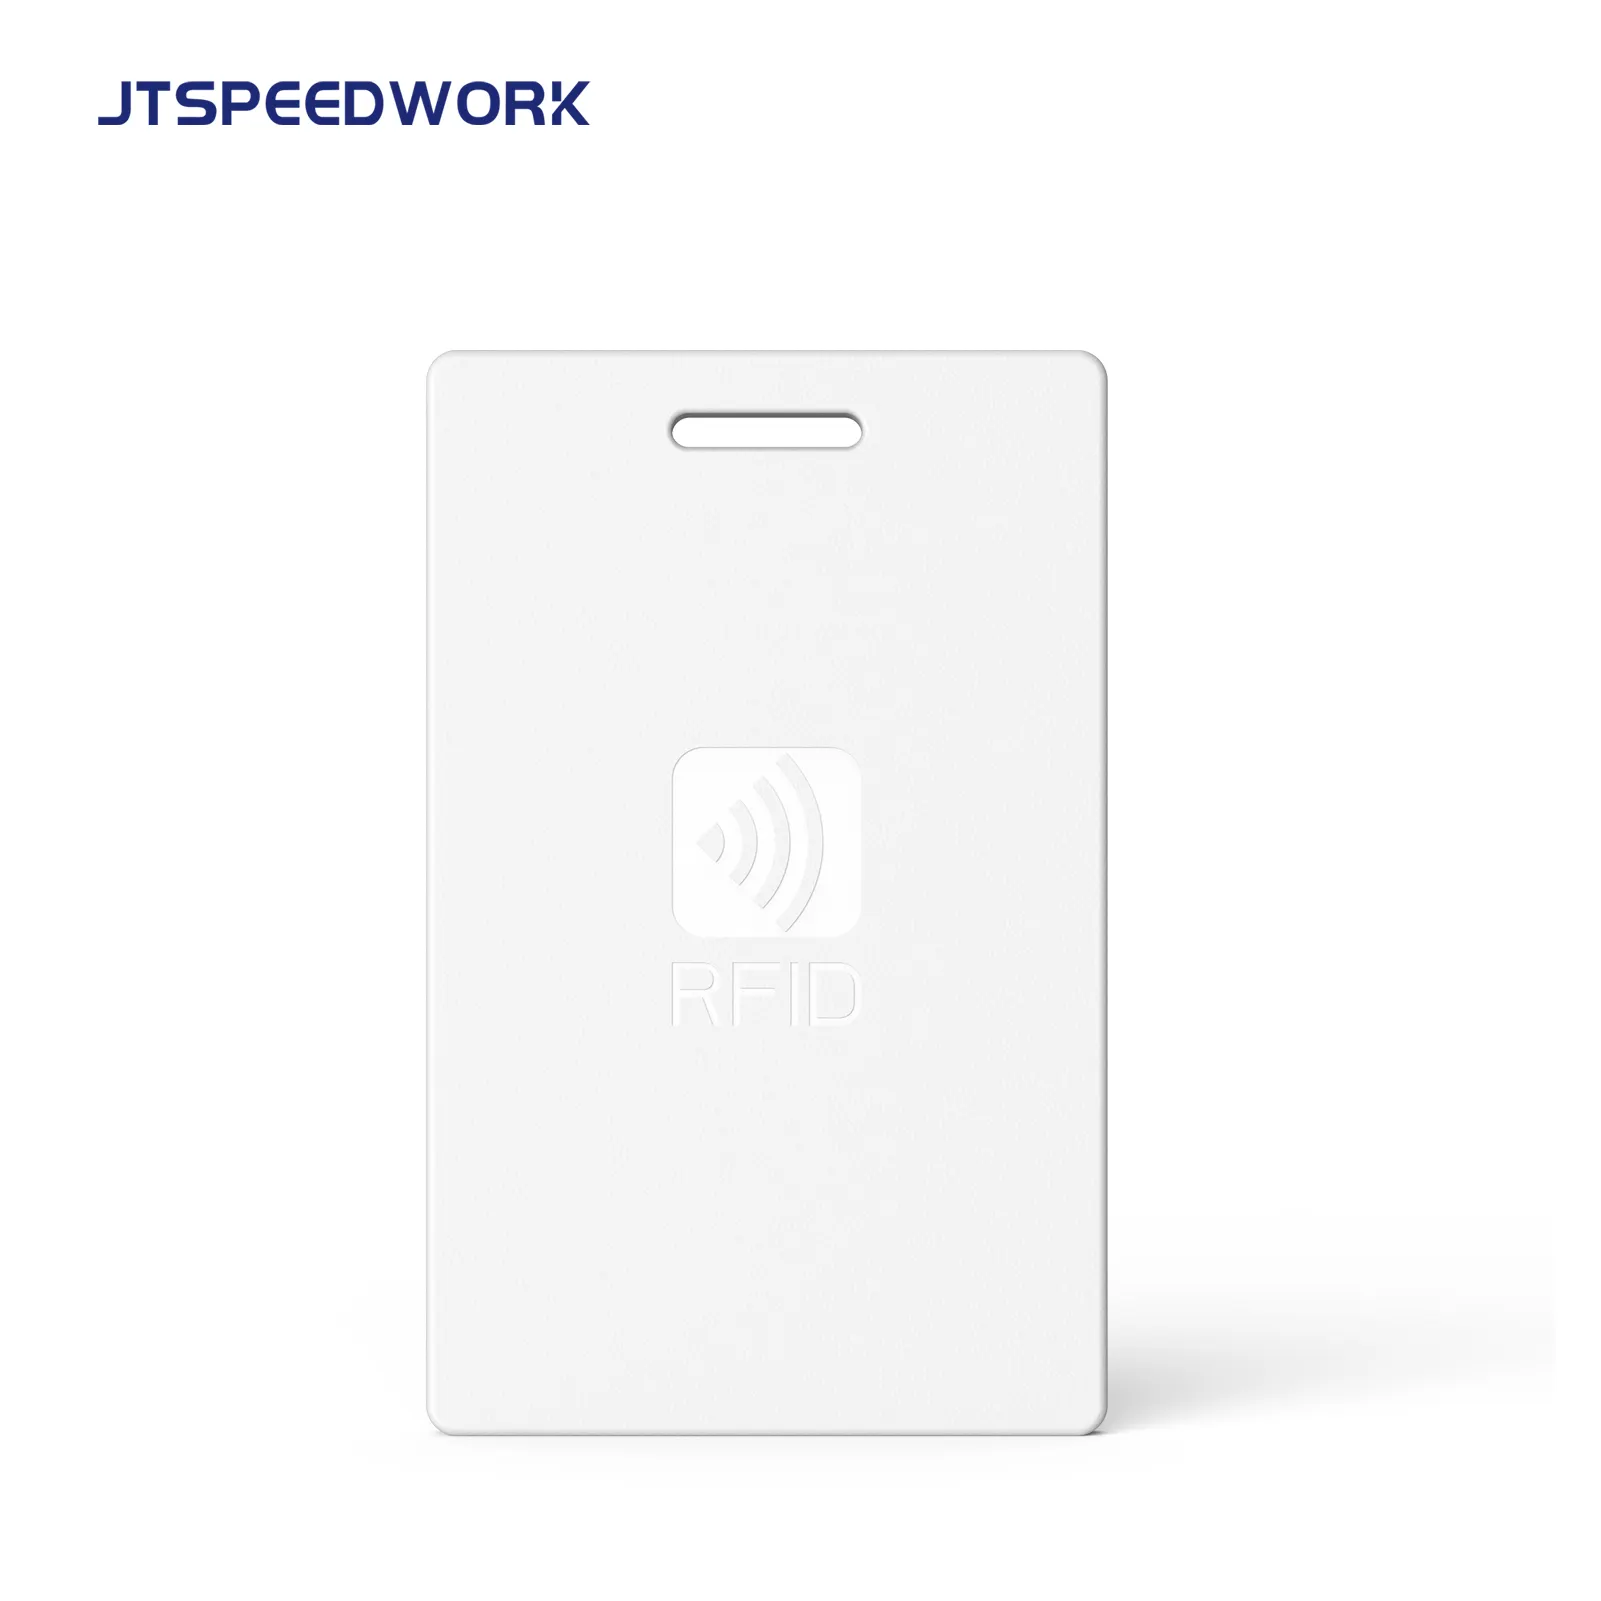 JTSPEEDWORK JT-T2450A 2.4g aktif RFID okuyucu su geçirmez etiket okuma uzun menzilli Uhf okuyucu küçük RFID etiketi